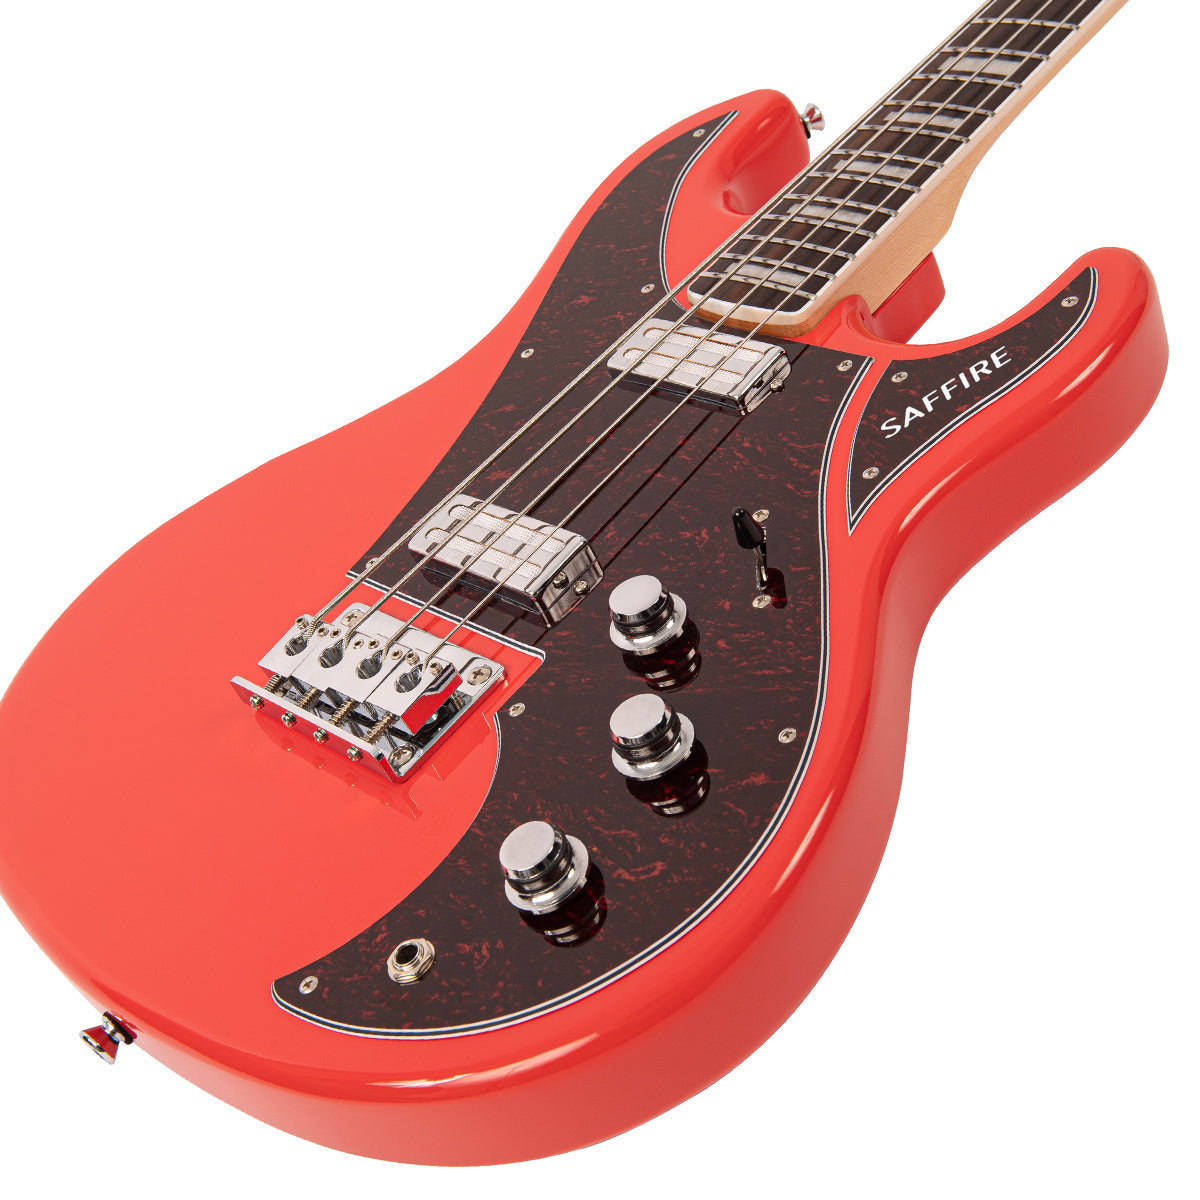 Rapier Saffire Bass Guitar ~ Fiesta Red, Bass Guitar for sale at Richards Guitars.